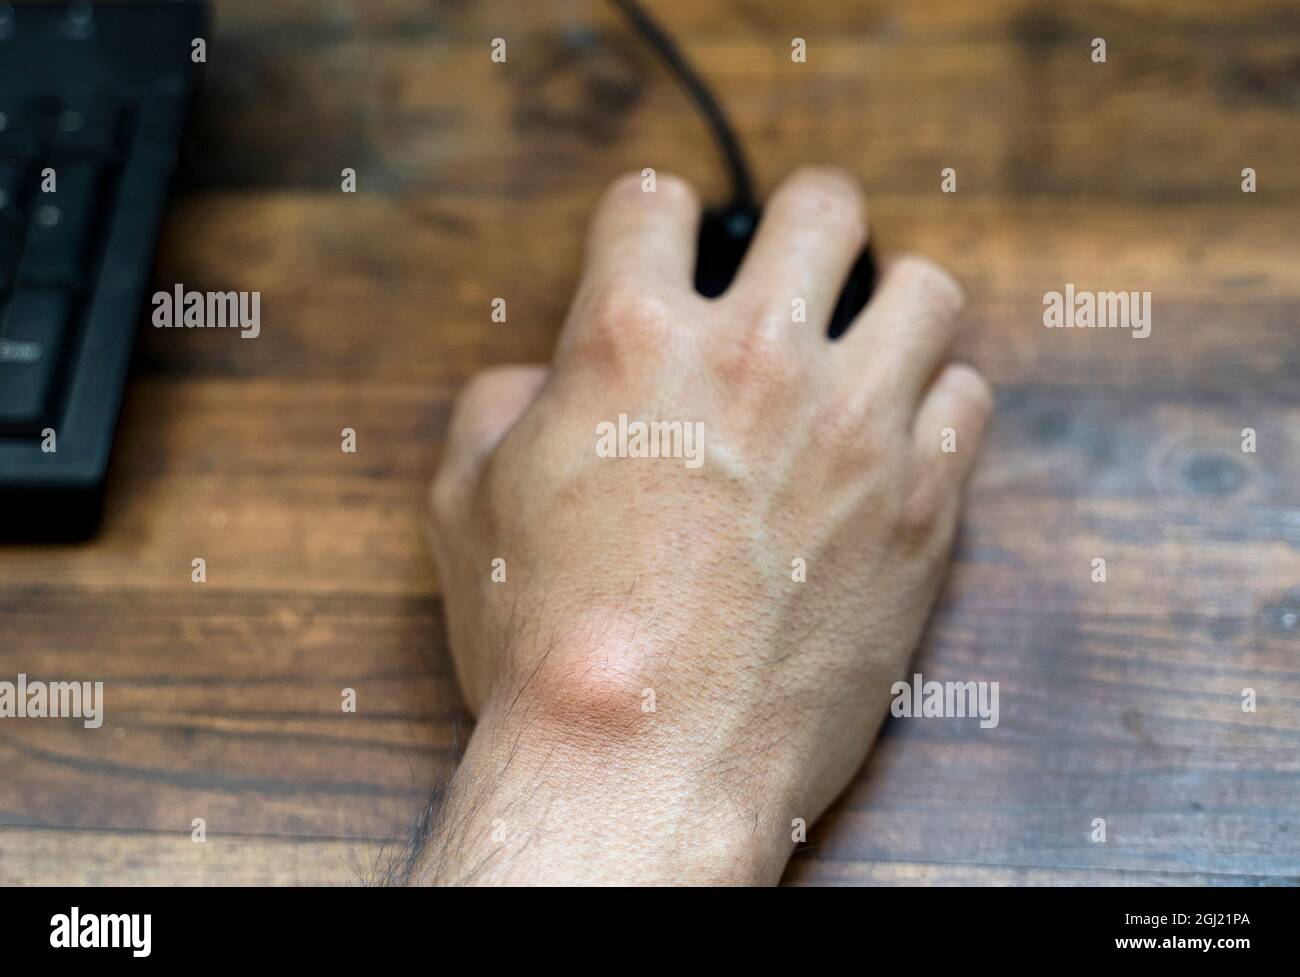 Kyste de ganglion sur la main de l'homme. Main tenant la souris de l'ordinateur. Banque D'Images